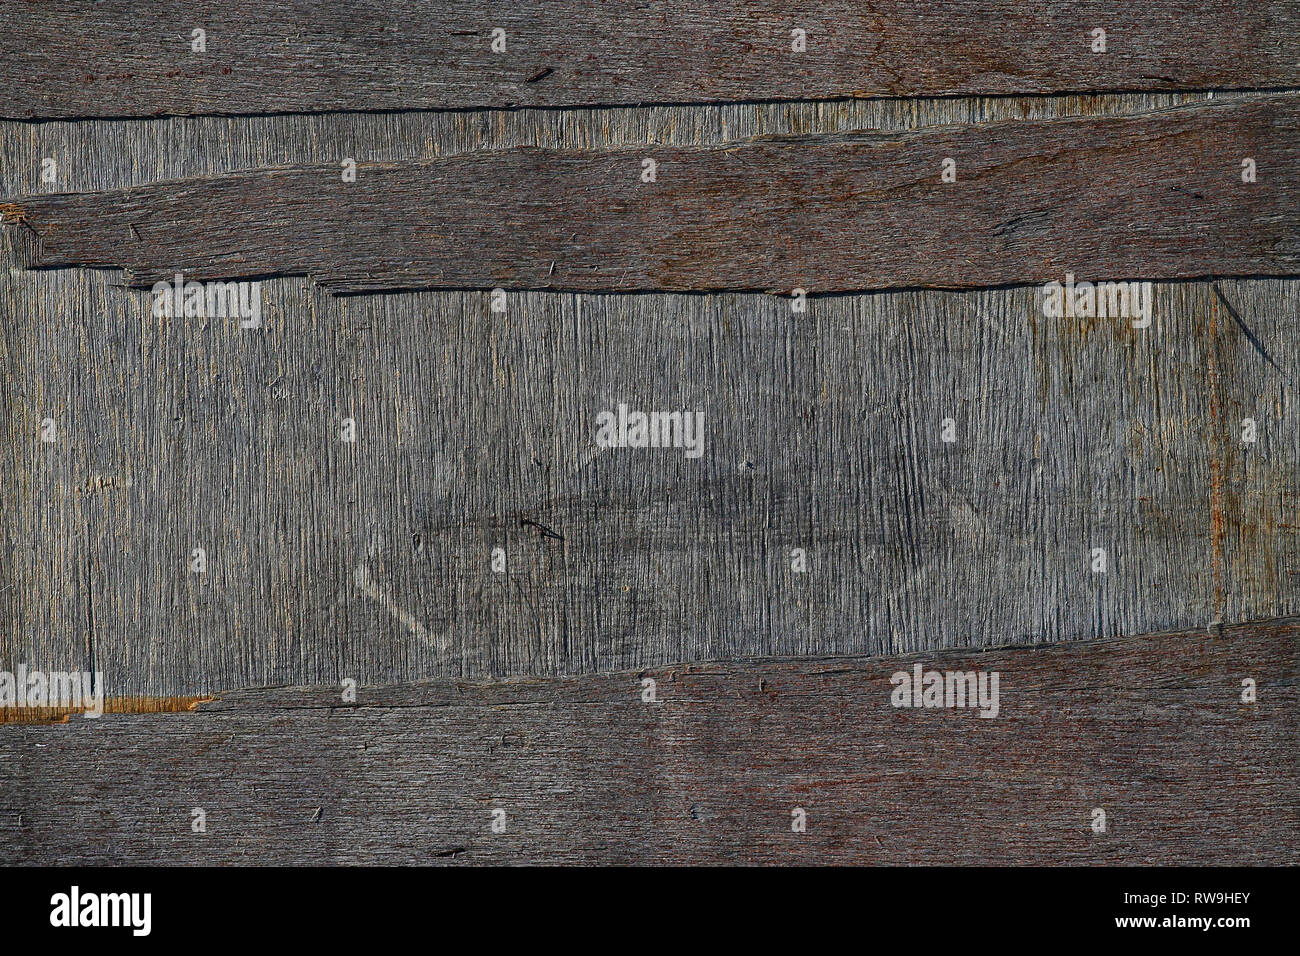 Vieille porte en bois, texture grain vertical horizontal Banque D'Images